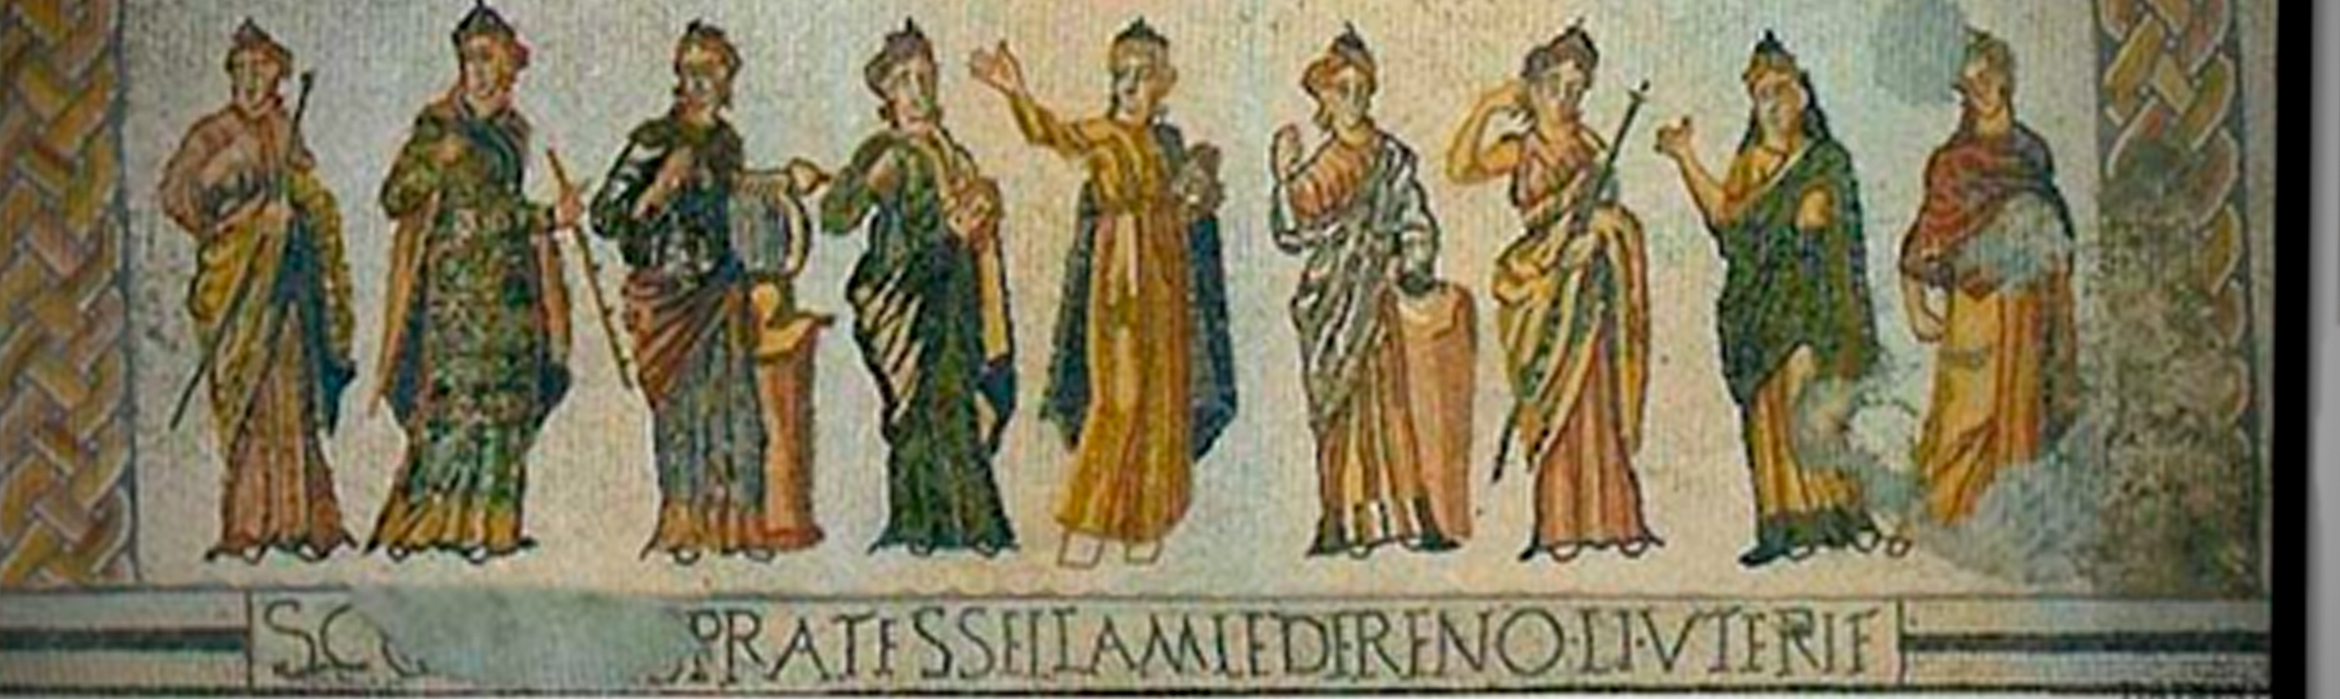 Mosaico de las musas inscripción en latín